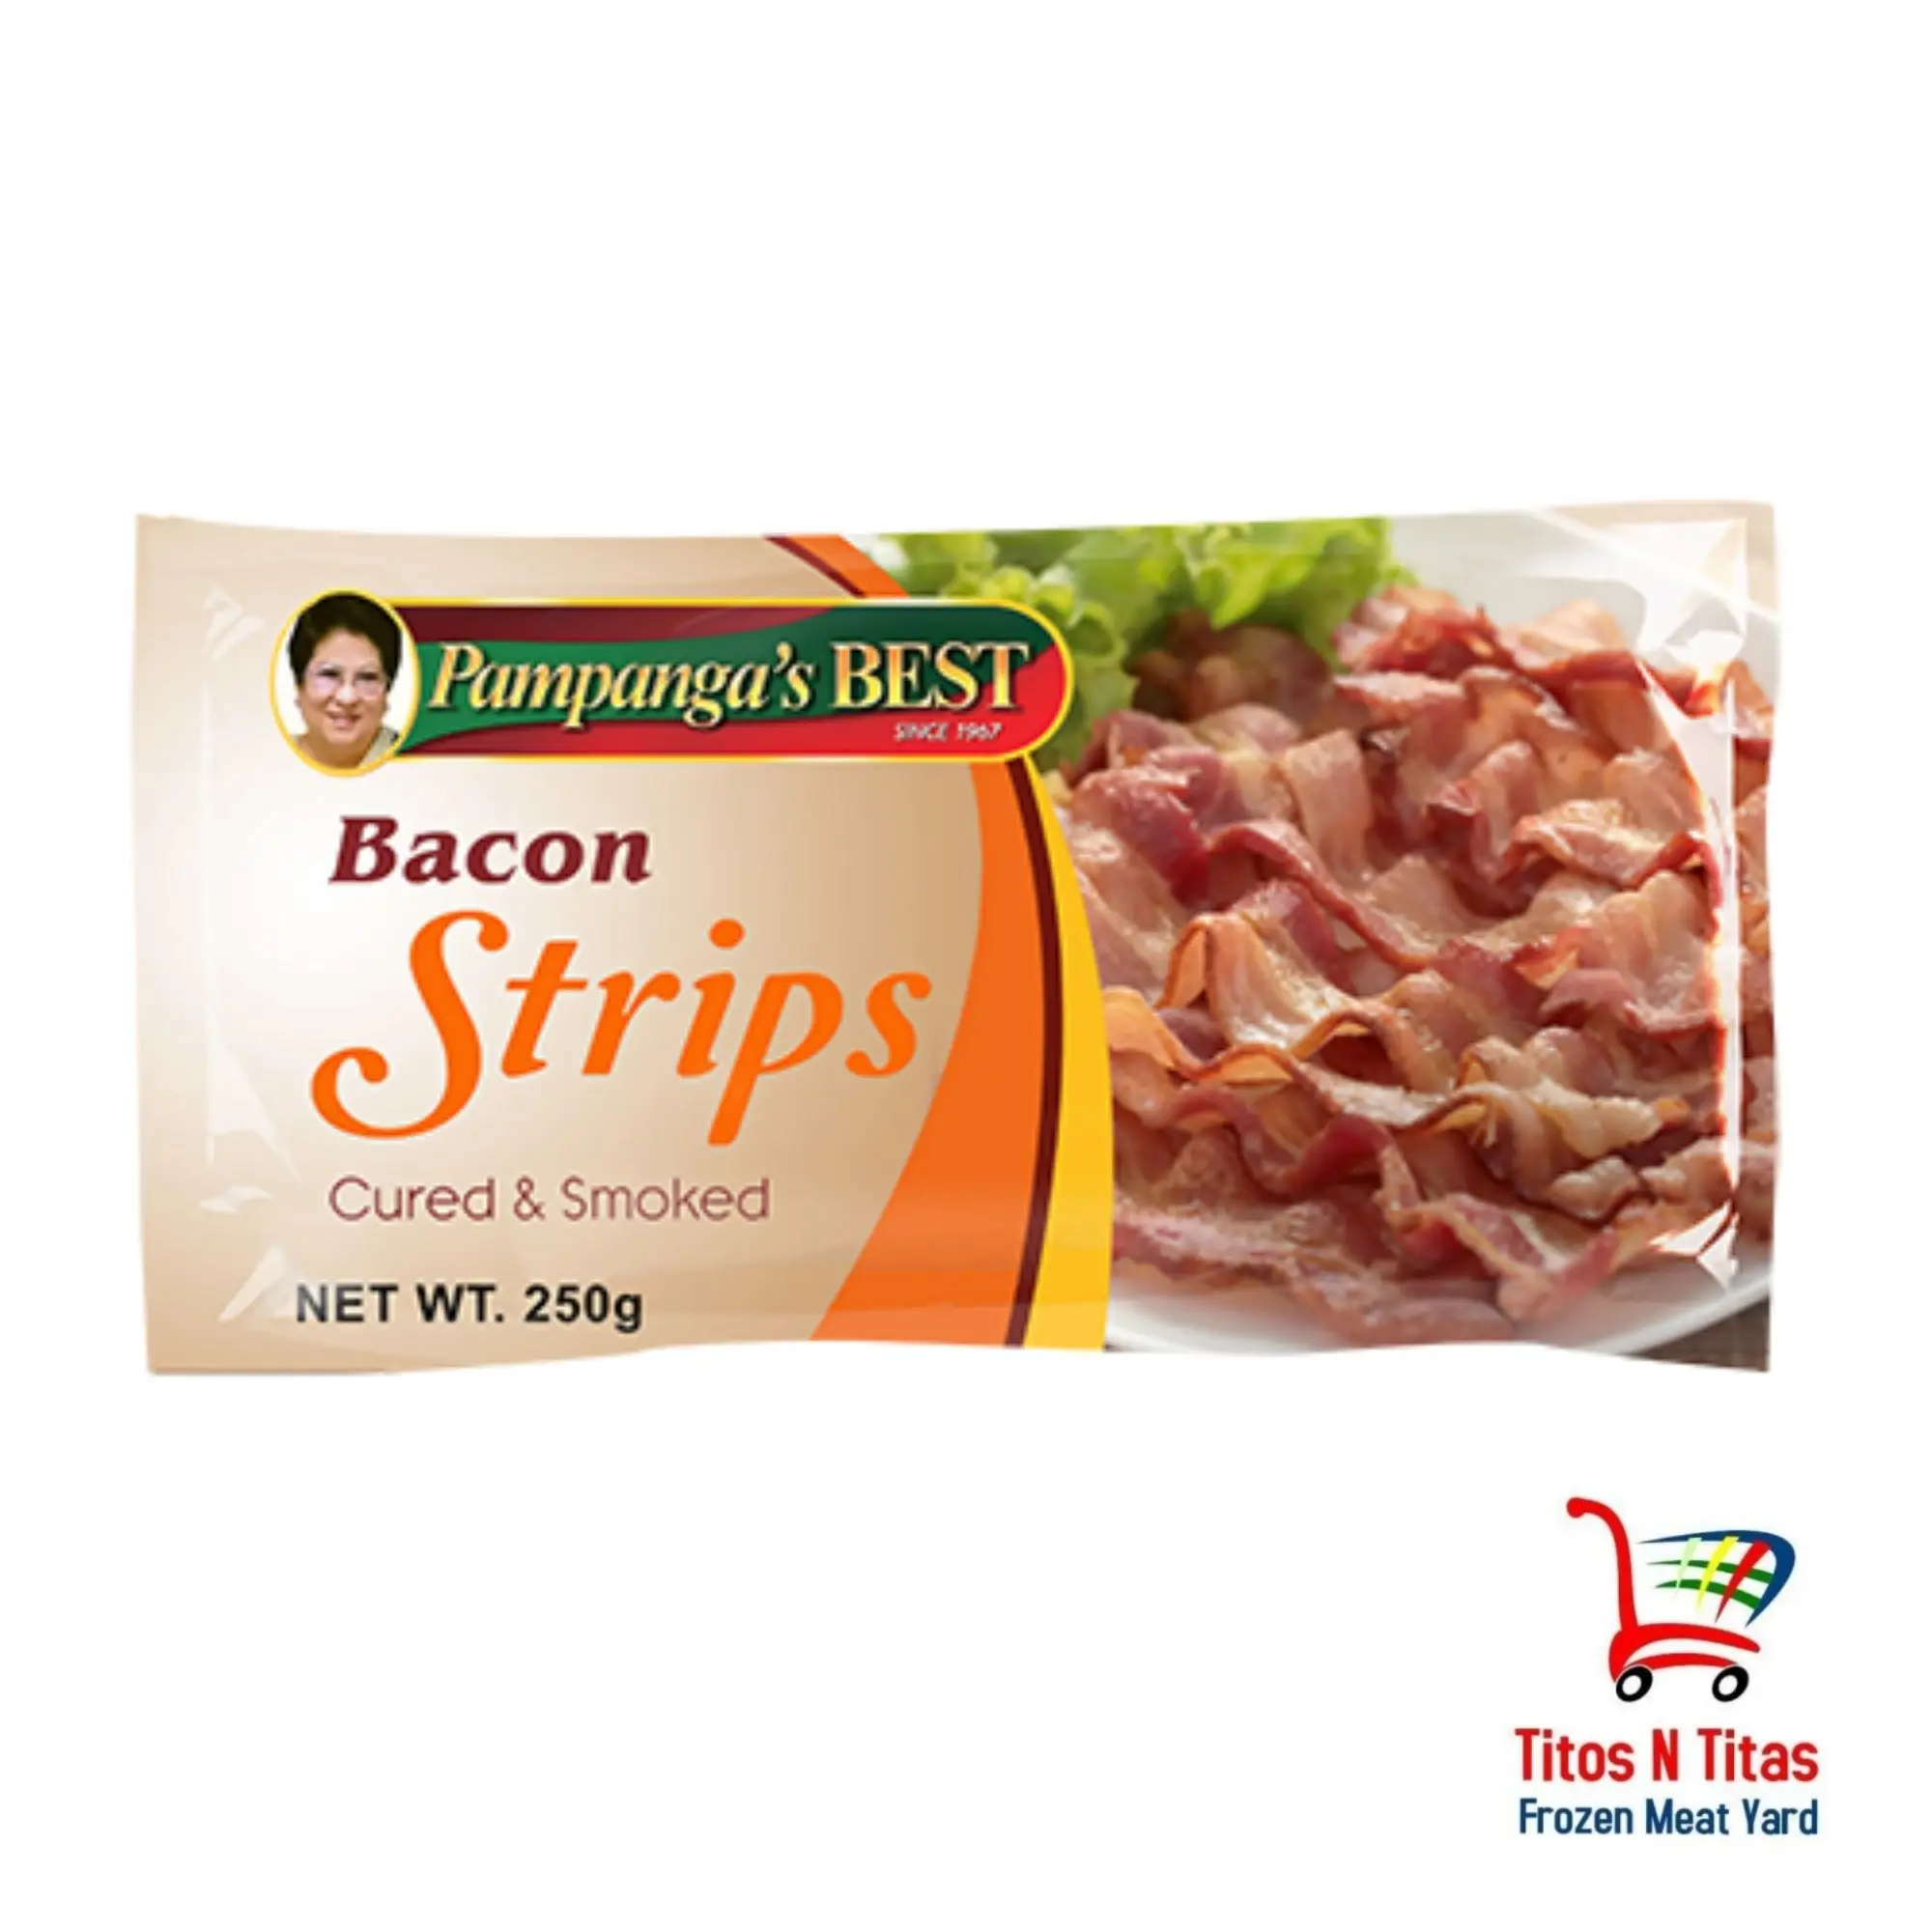 Pampanga's Best Bacon Strips